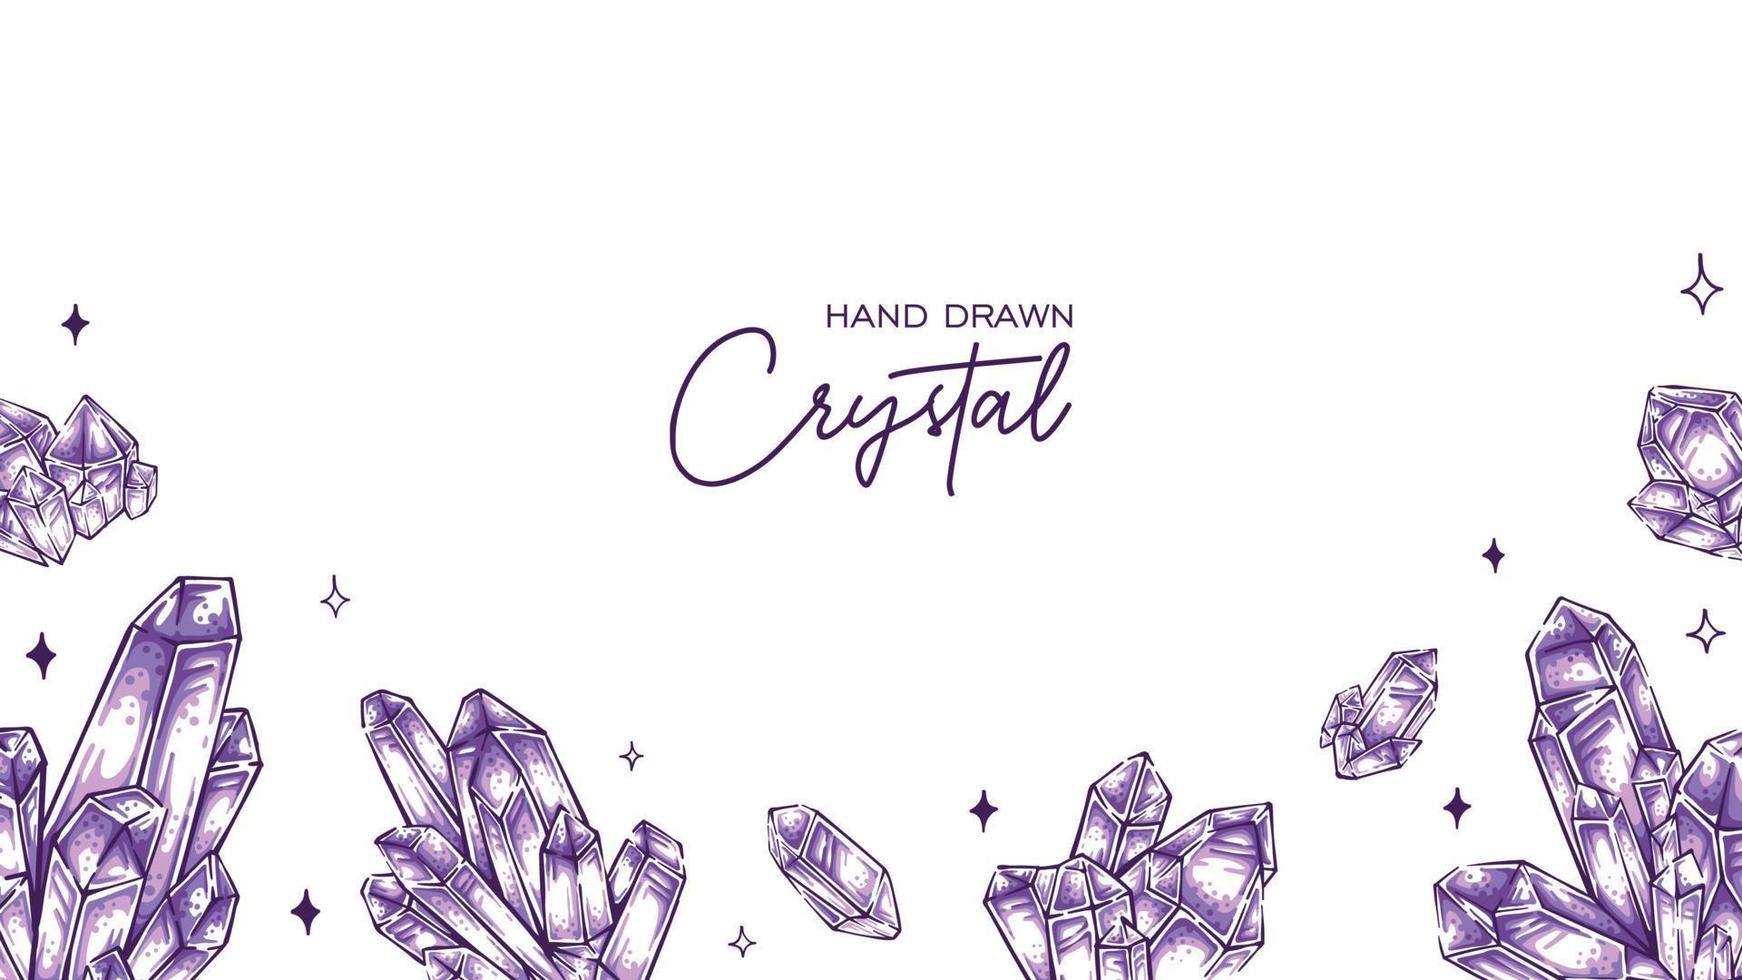 Hand drawn Amethyst crystal quartz illustration background frame for banner, flyer, presentation design vector